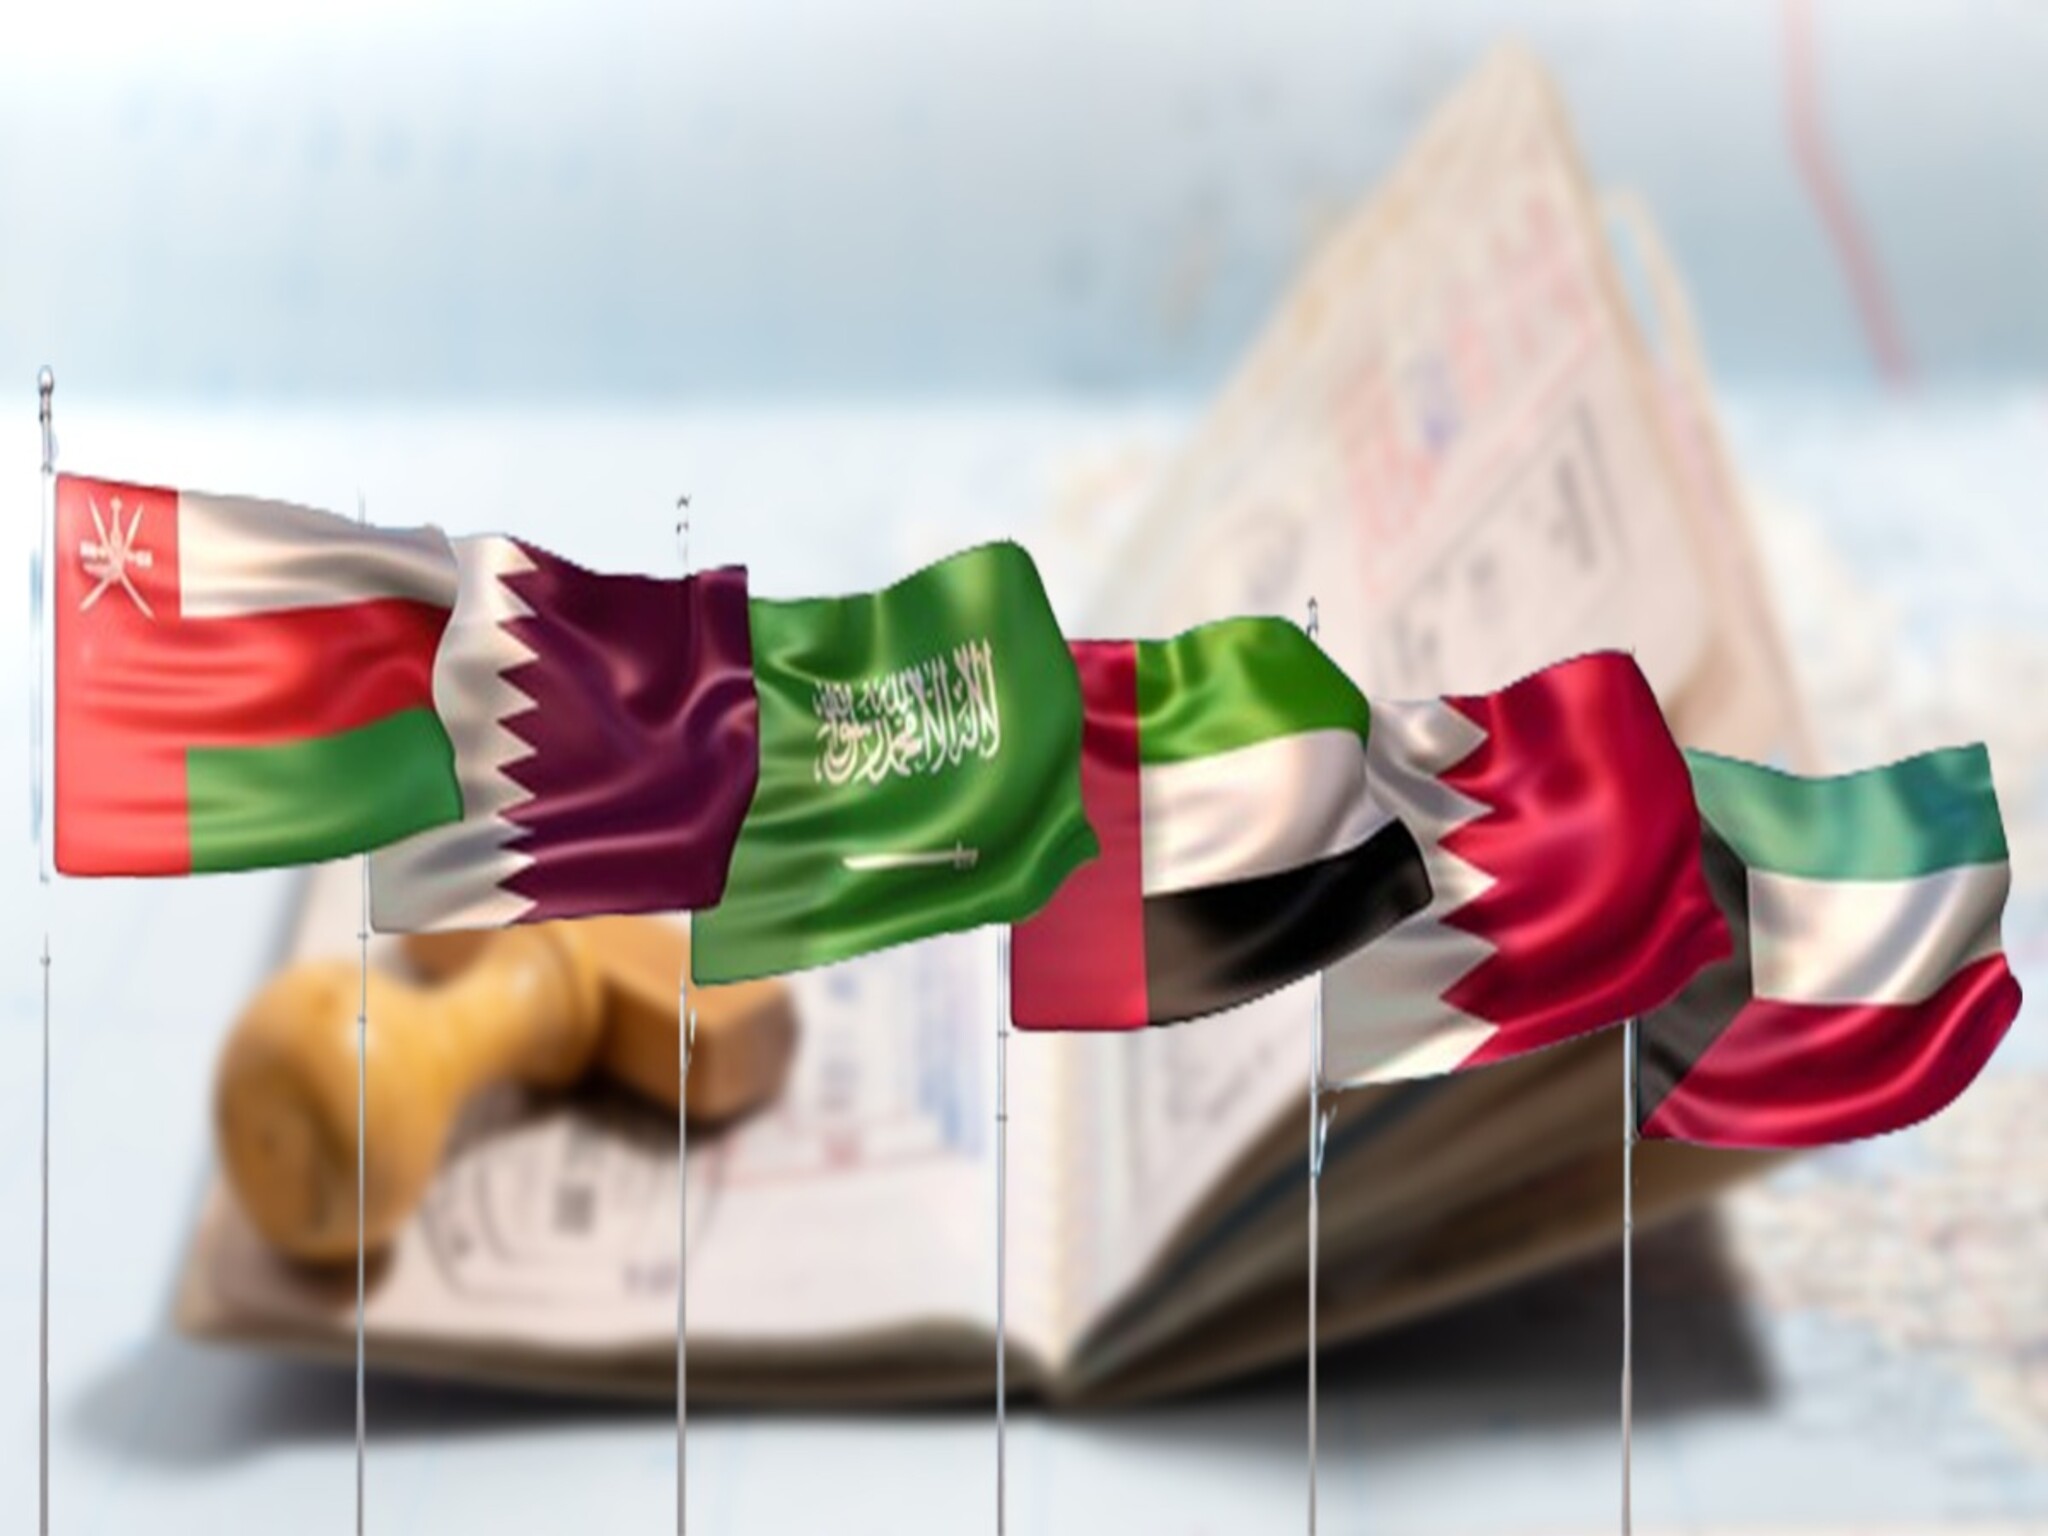 مجلس التعاون الخليجي يعلن إطلاق “التأشيرة الخليجية الموحدة” في 2025